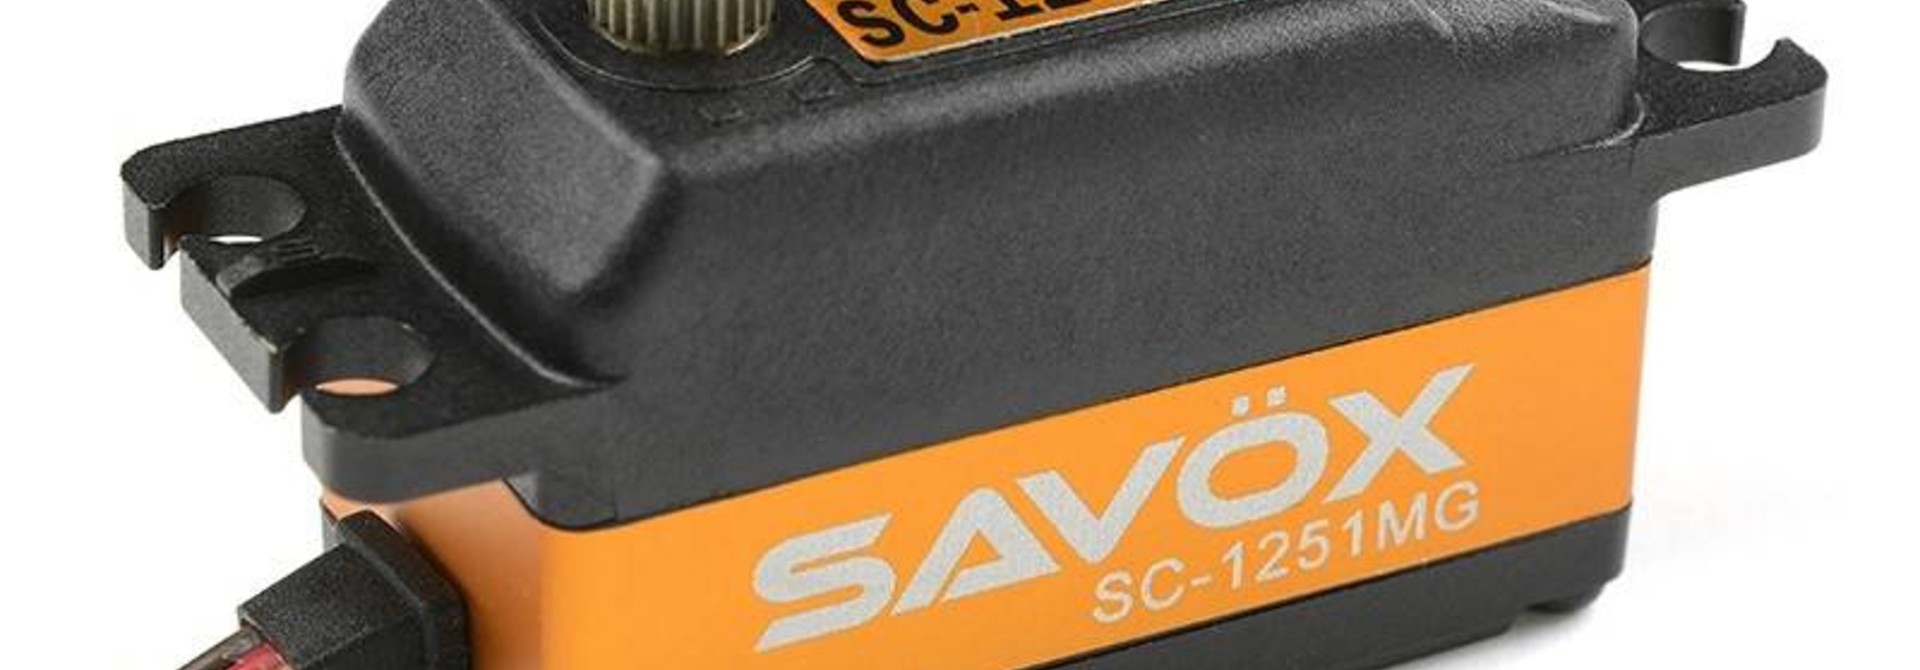 Savox - Servo - SC-1251MG - Digital - Coreless Motor - Metaal tandwielen